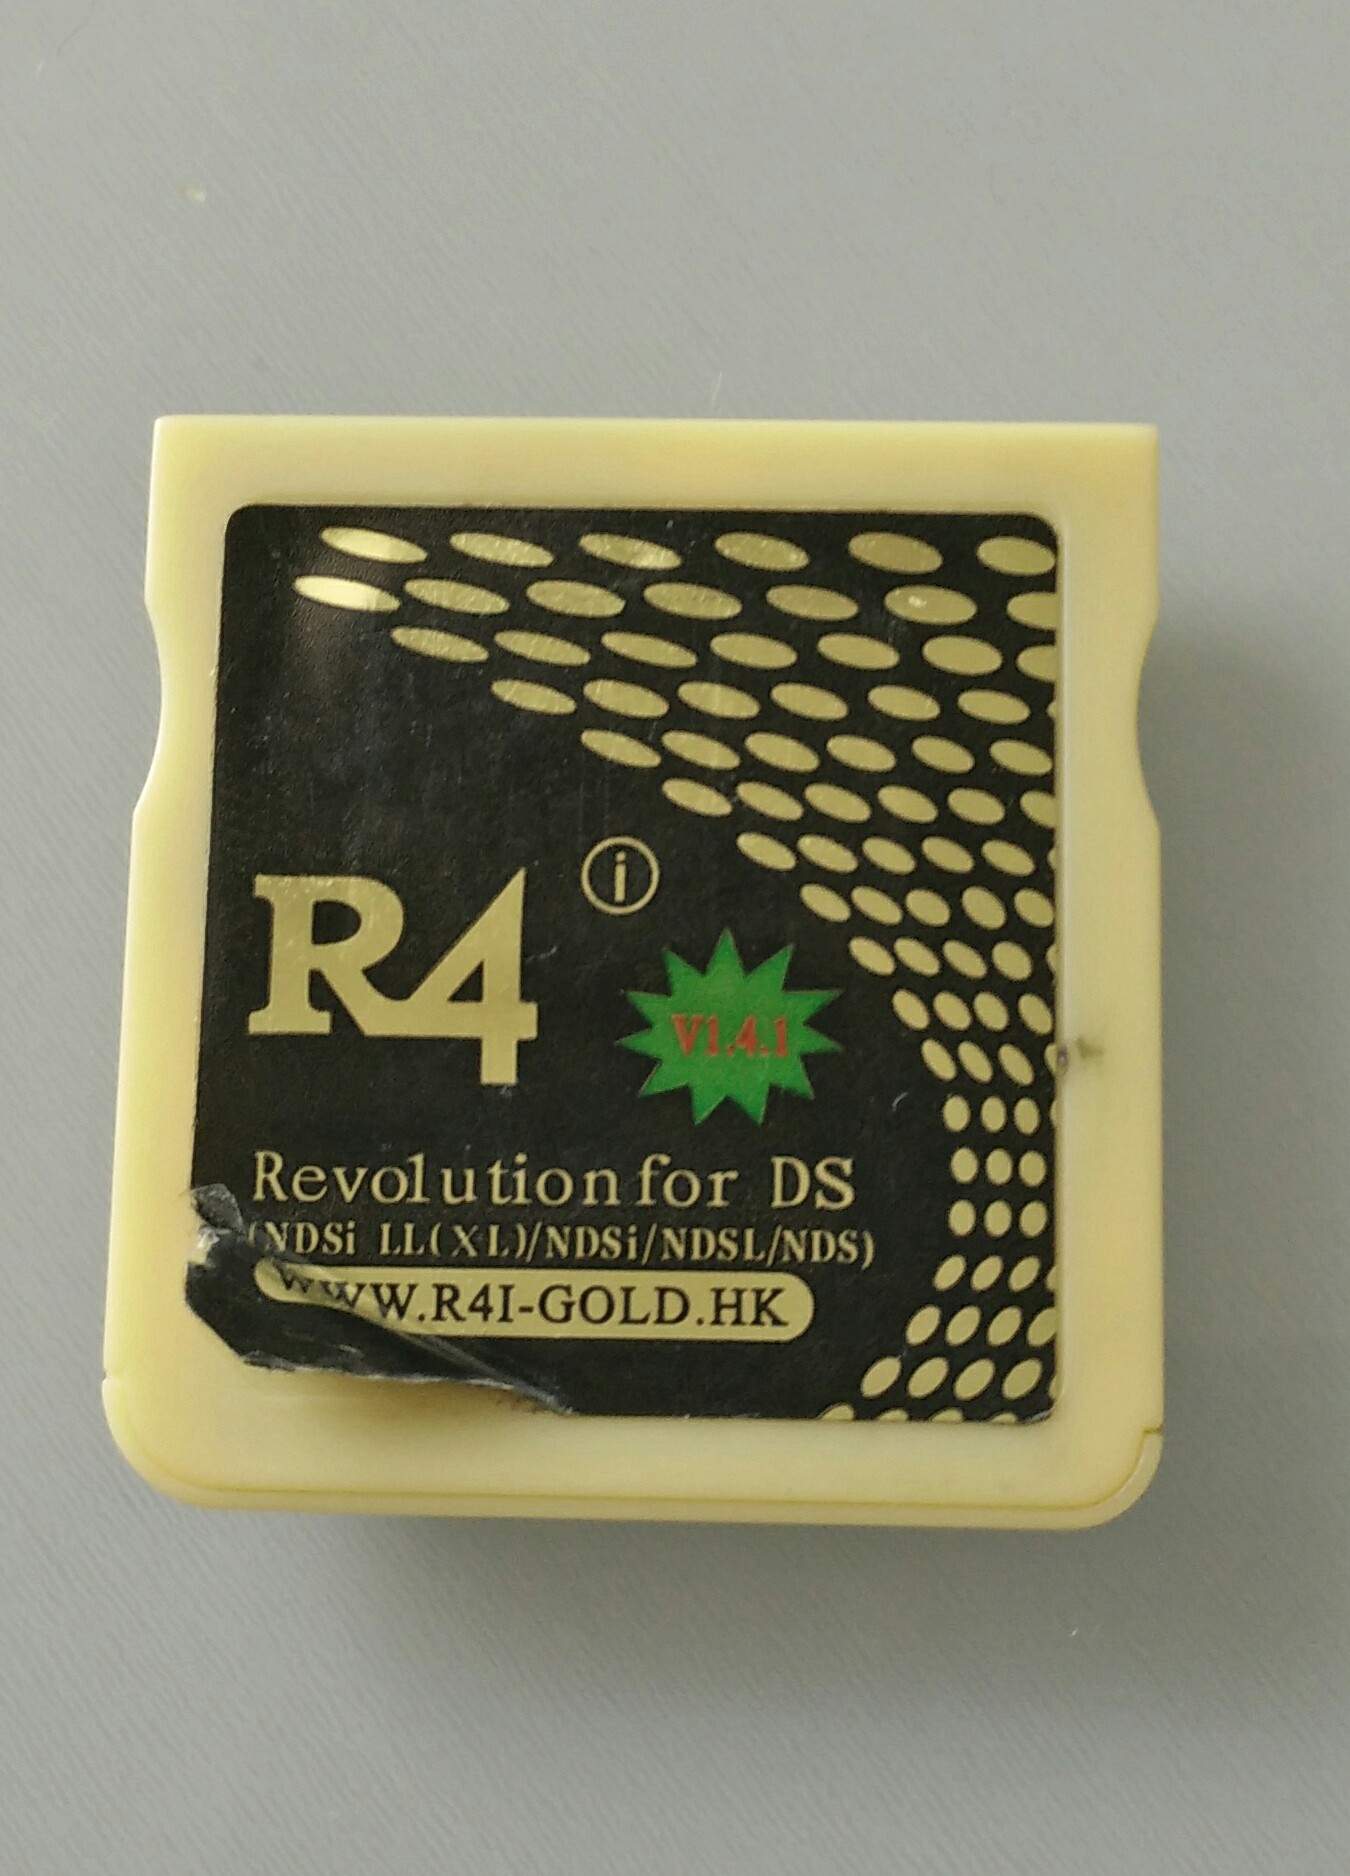 r4i gold v1.4.1 software